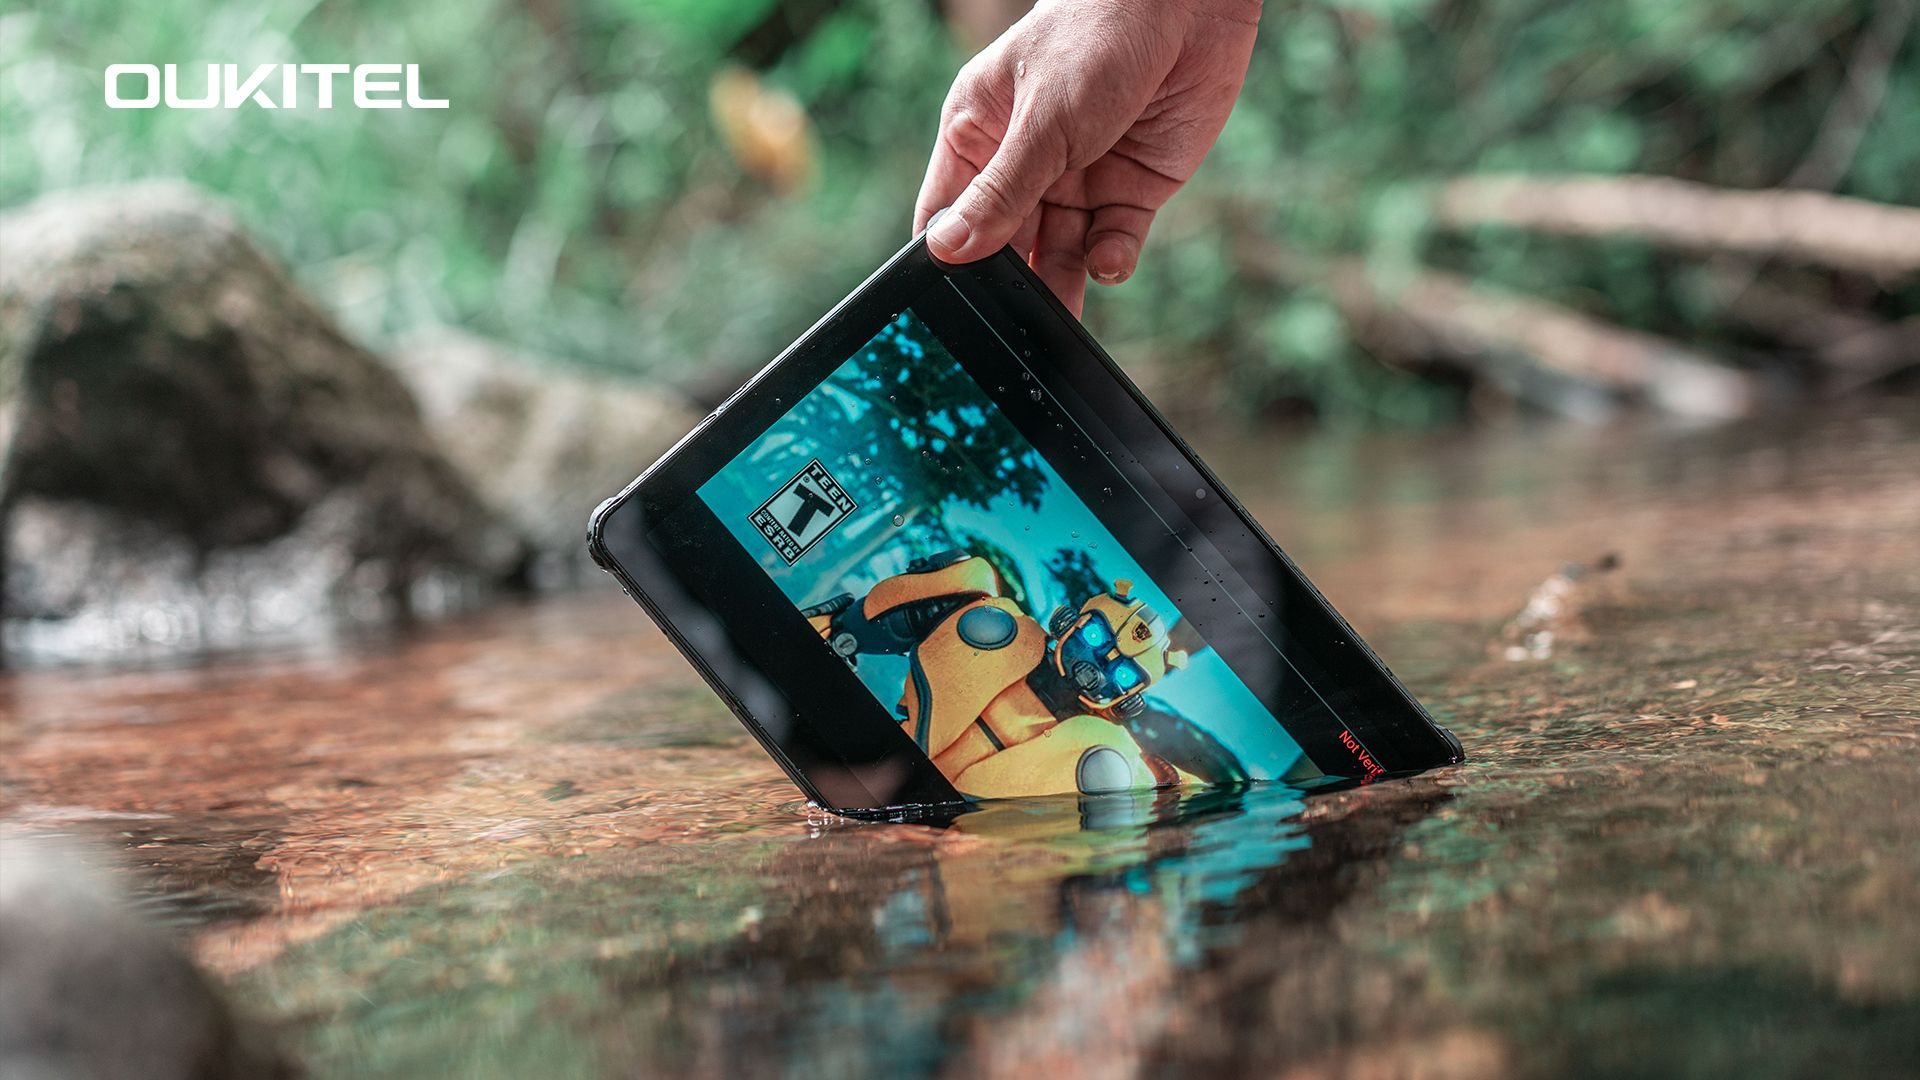 Oukitel RT7 Titan, ufficiale il primo tablet rugged 5G da 32000mAh